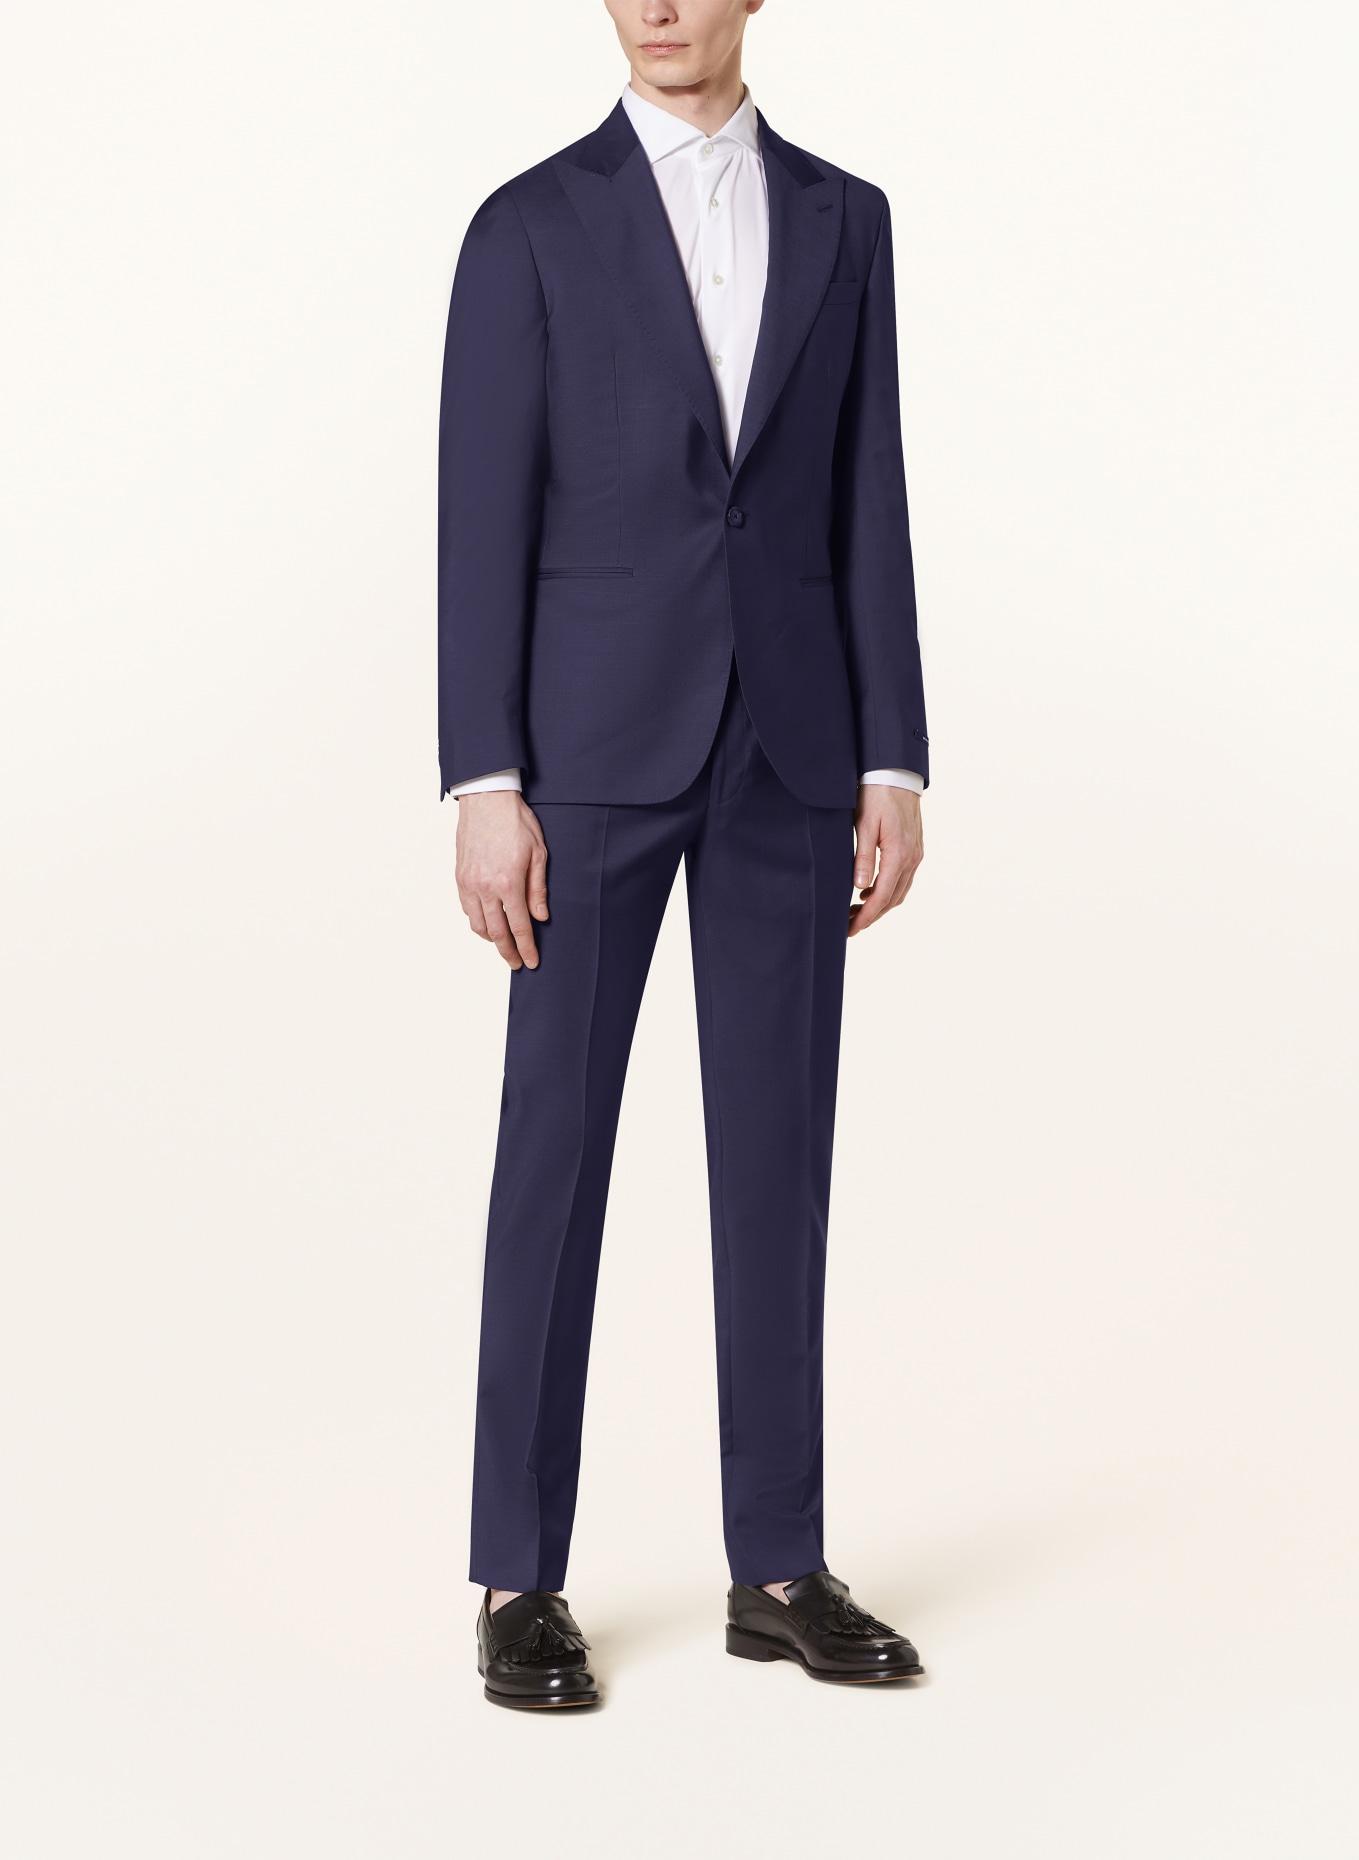 REISS Suit jacket DESTINY extra slim fit, Color: 30 navy (Image 2)